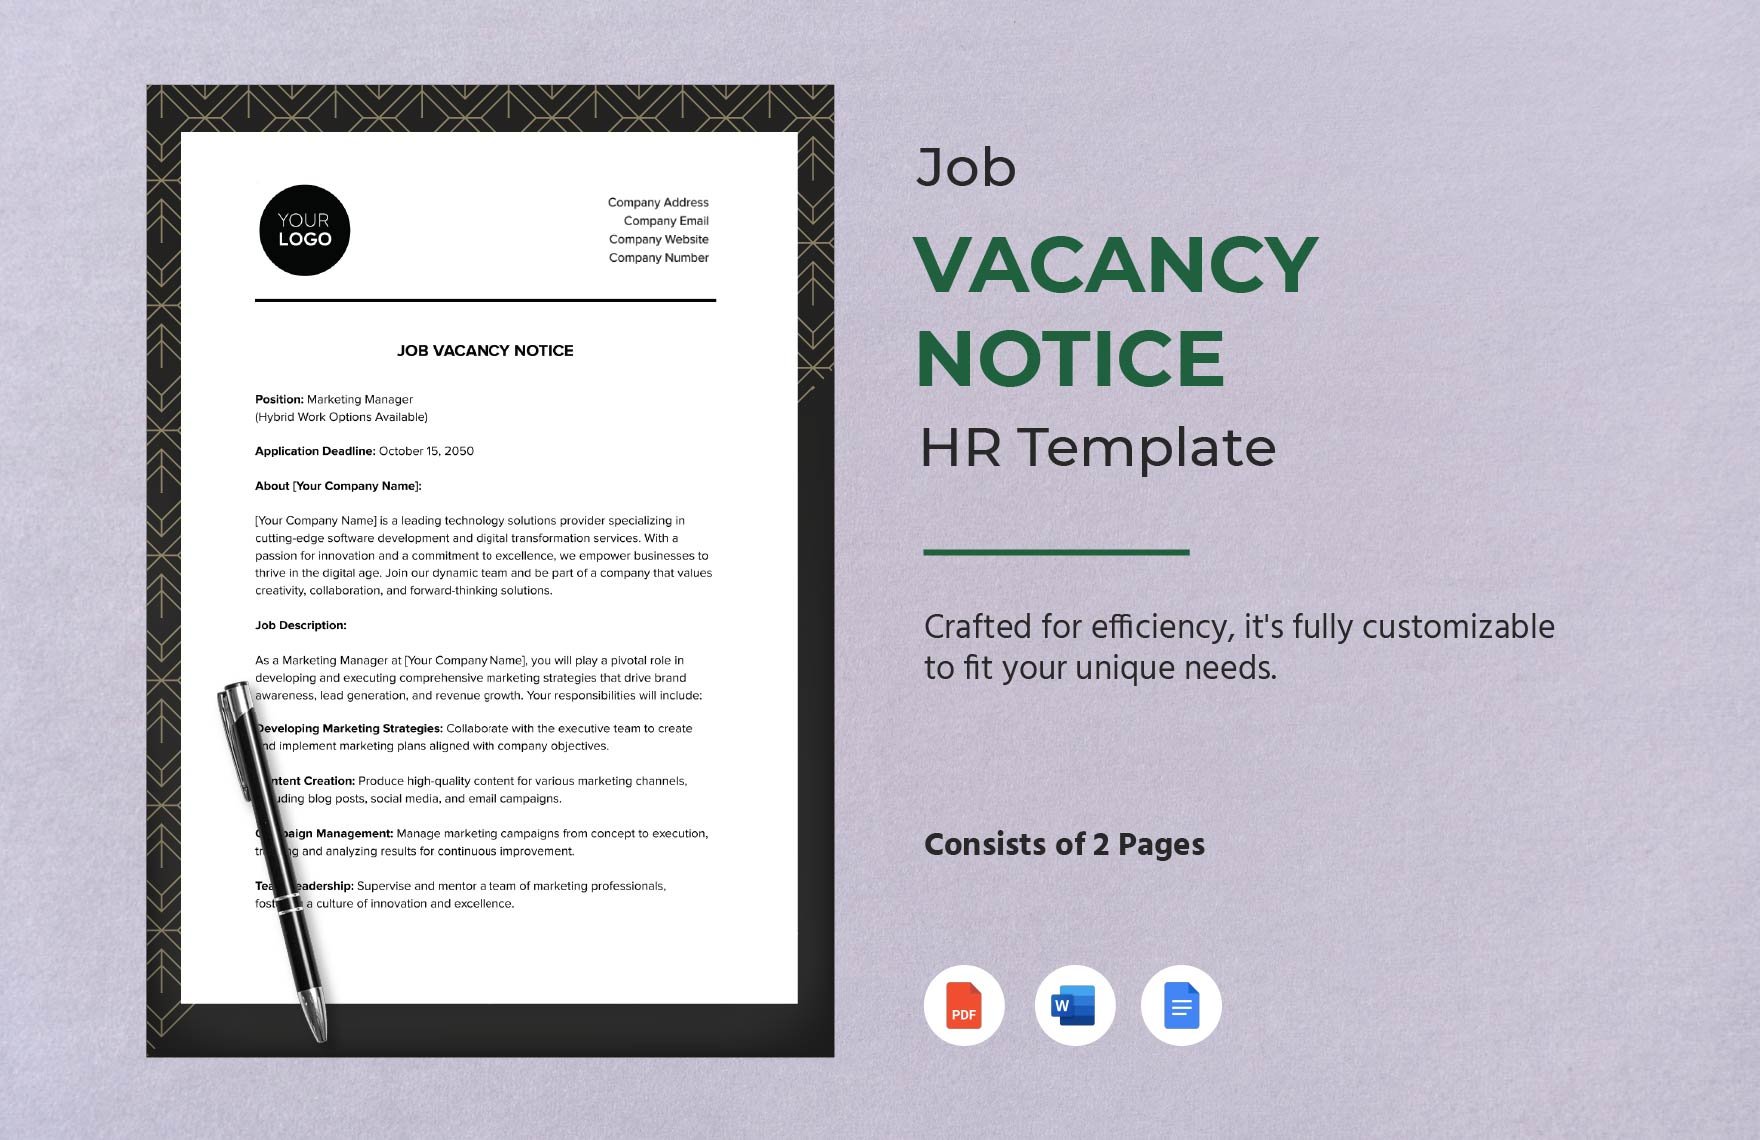 Job Vacancy Notice HR Template in Word, Google Docs, PDF